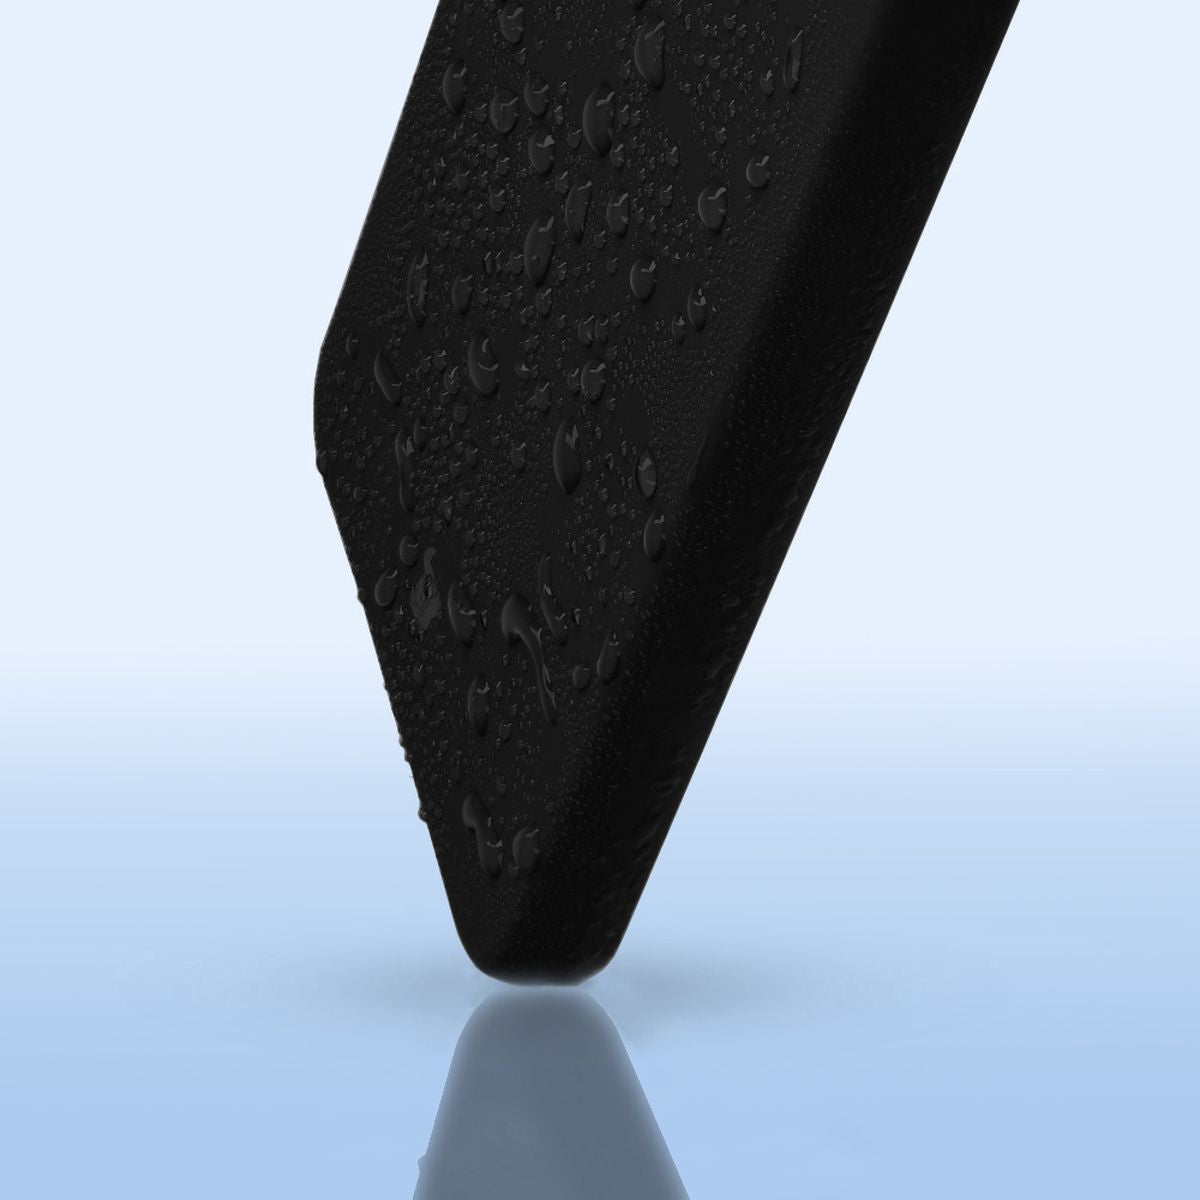 Silikon Schutzhülle für Galaxy A55 5G, Bizon Soft Case, Schwarz